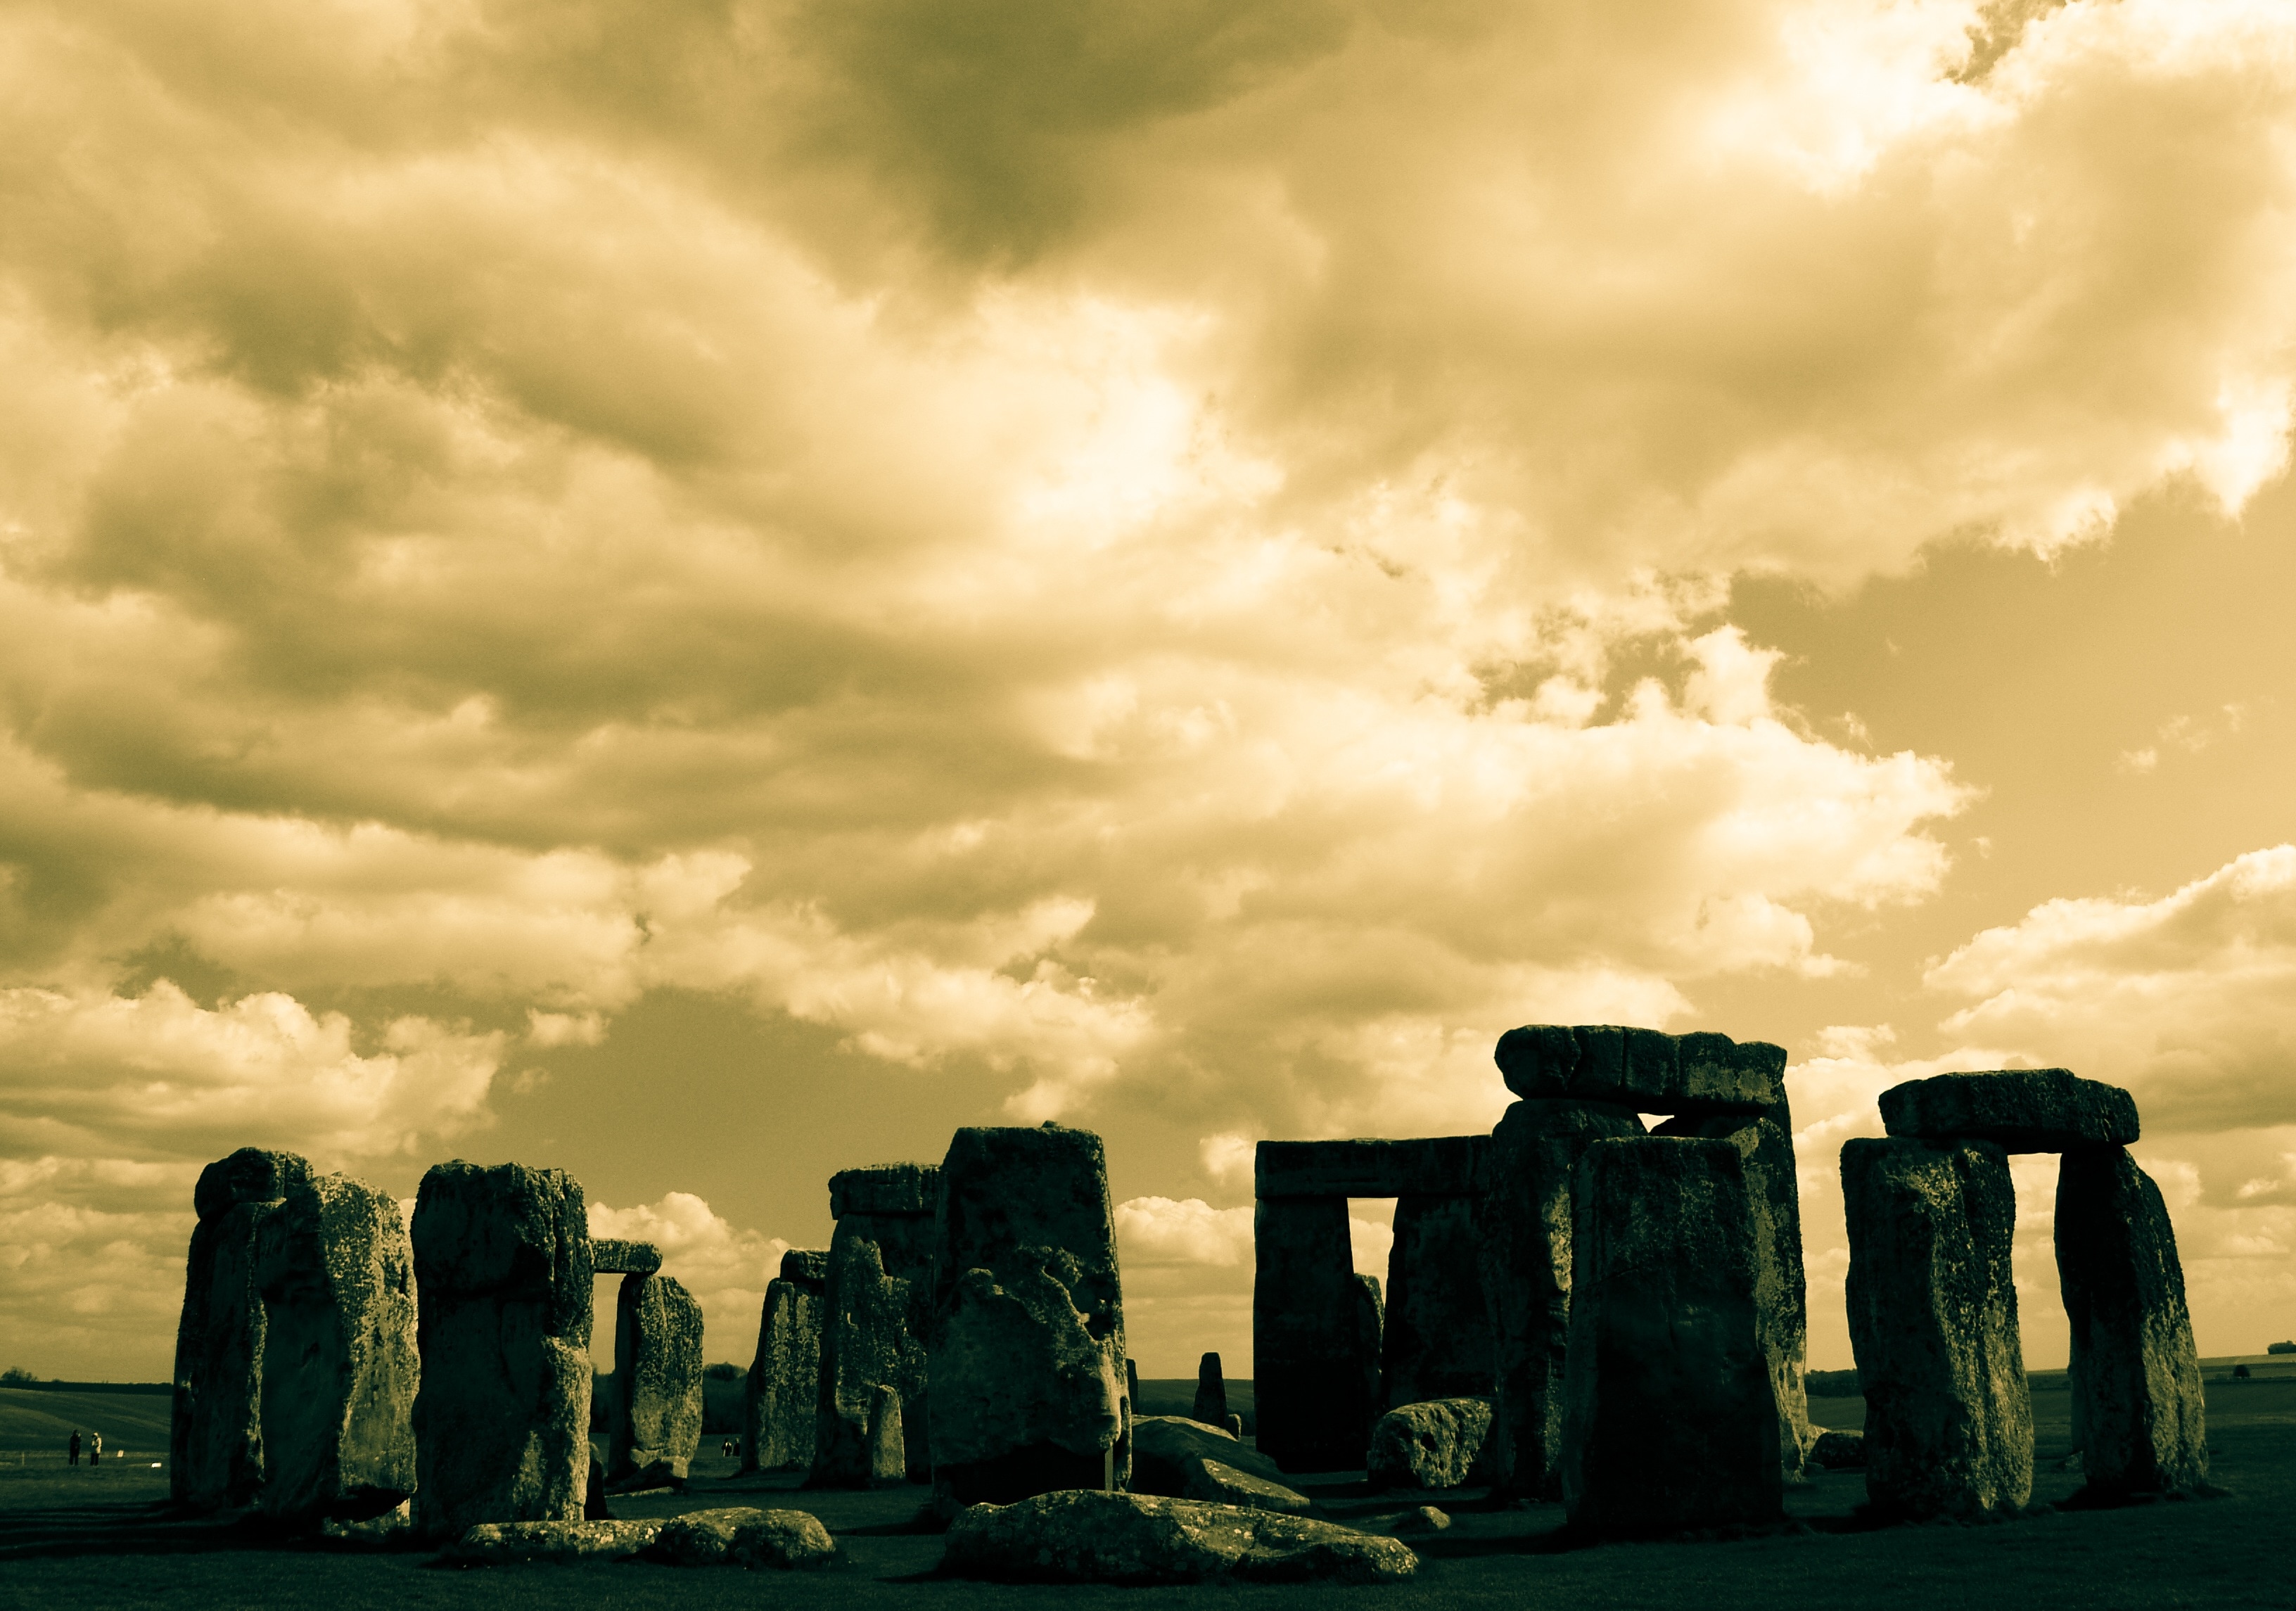 stonehenge in united kingdom